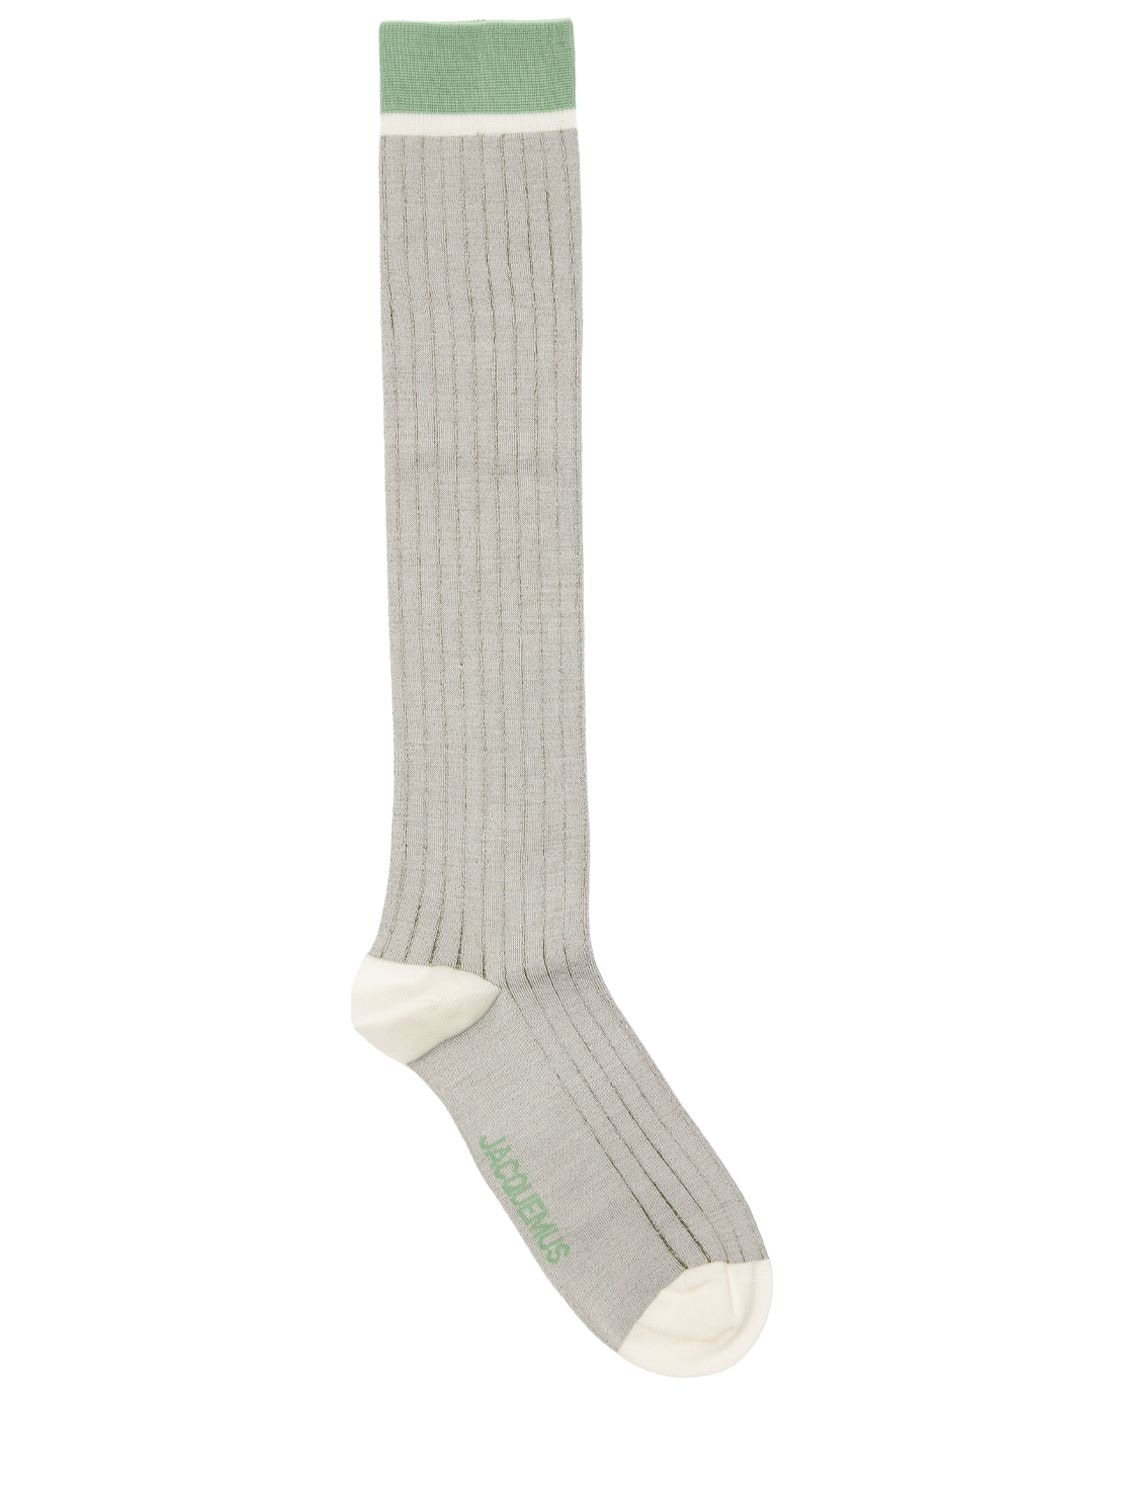 Les Chaussettes Montagne Logo Socks